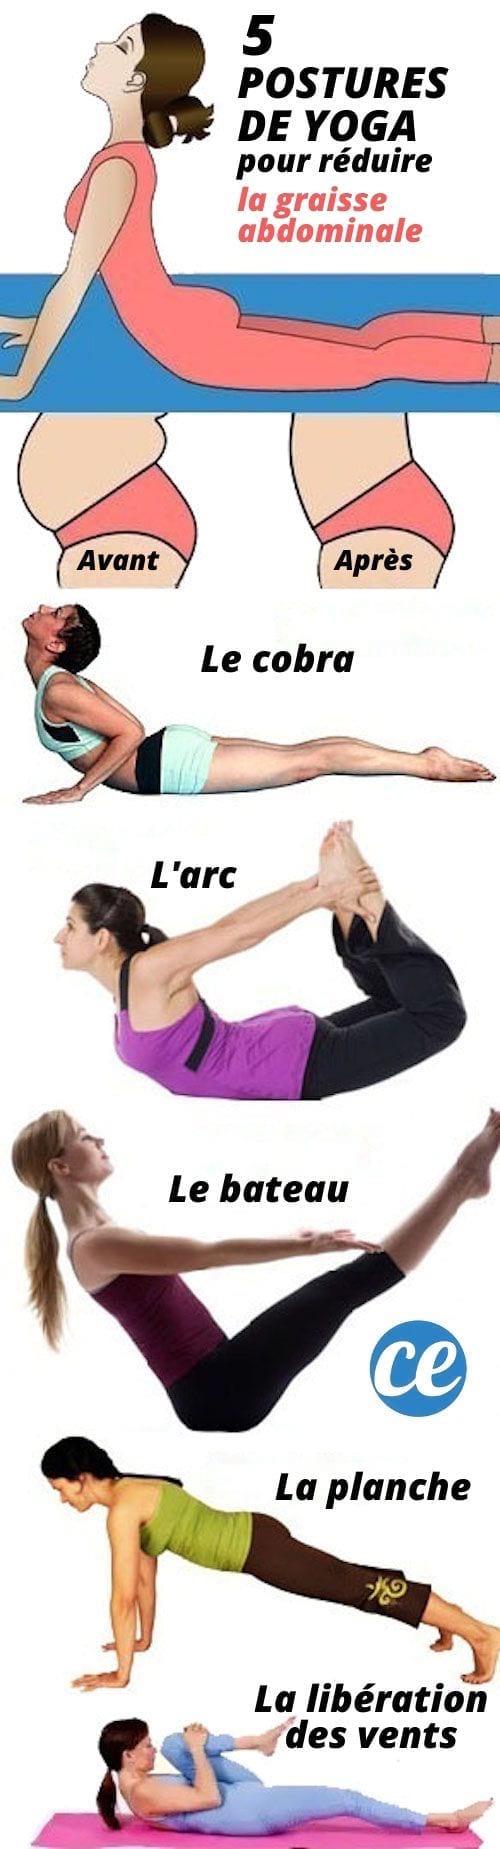 Exercices de yoga pour avoir un ventre plat